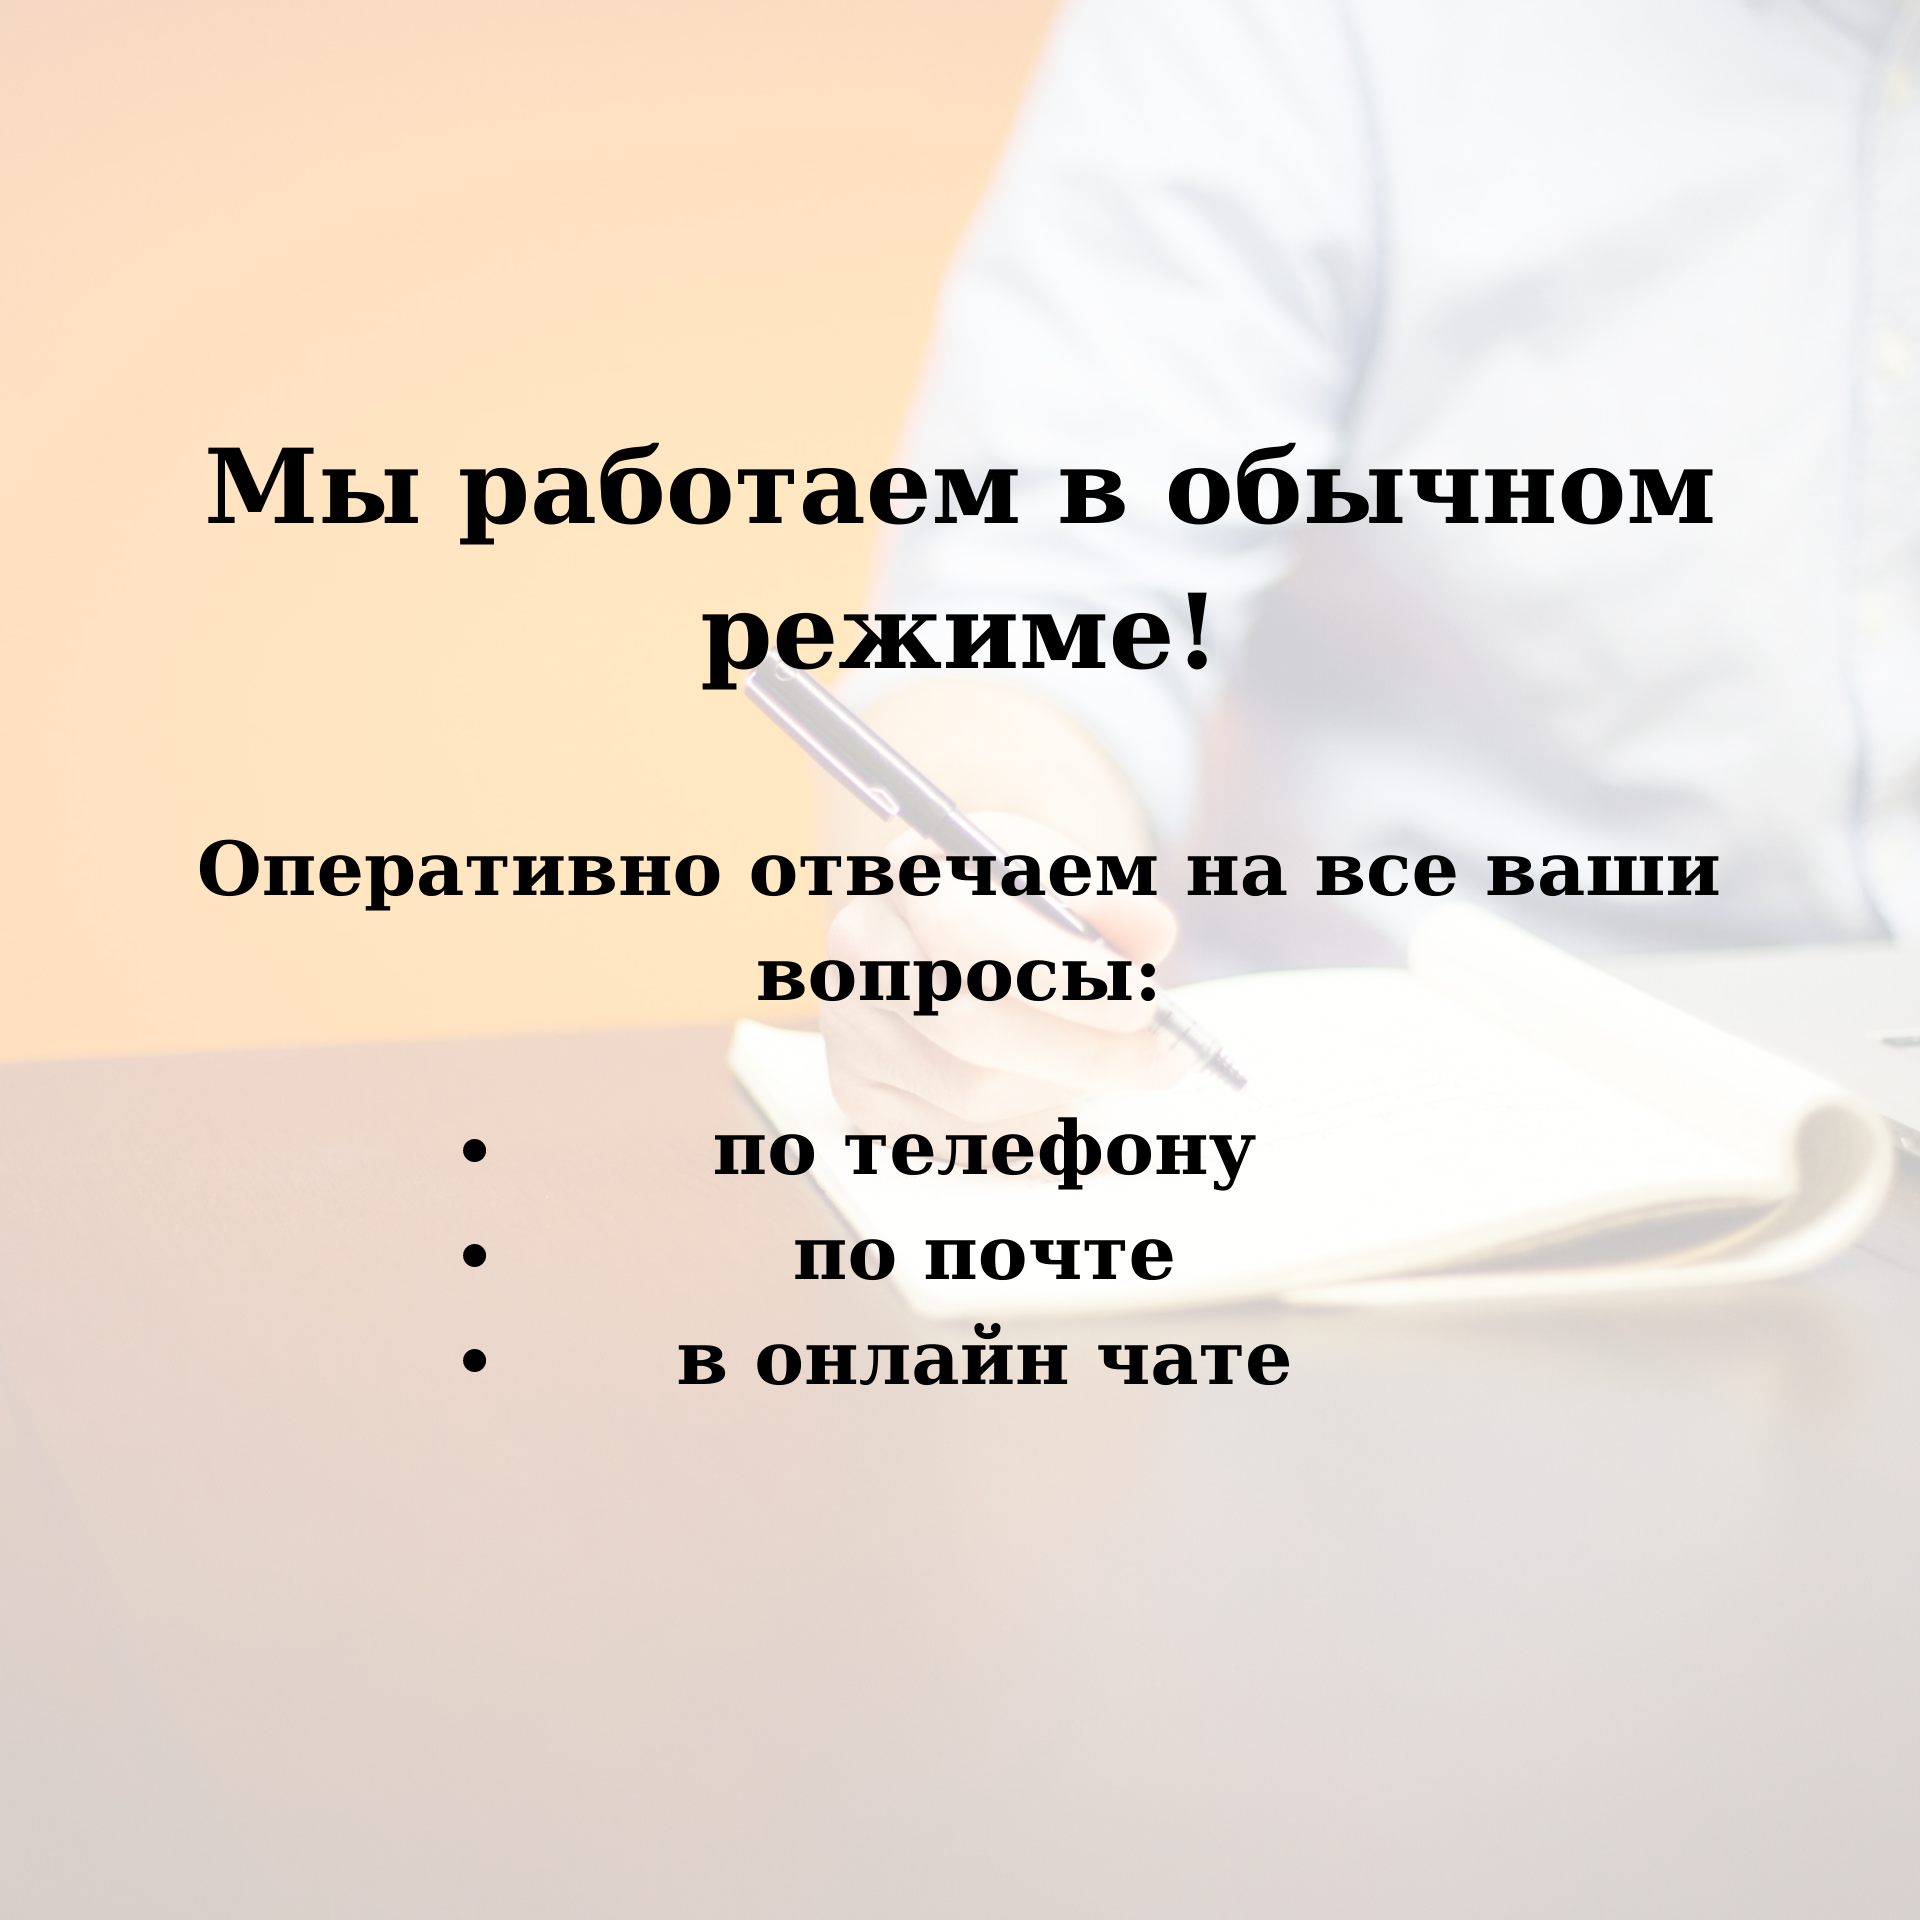 Центр сертификации продукции Москва - Делотест